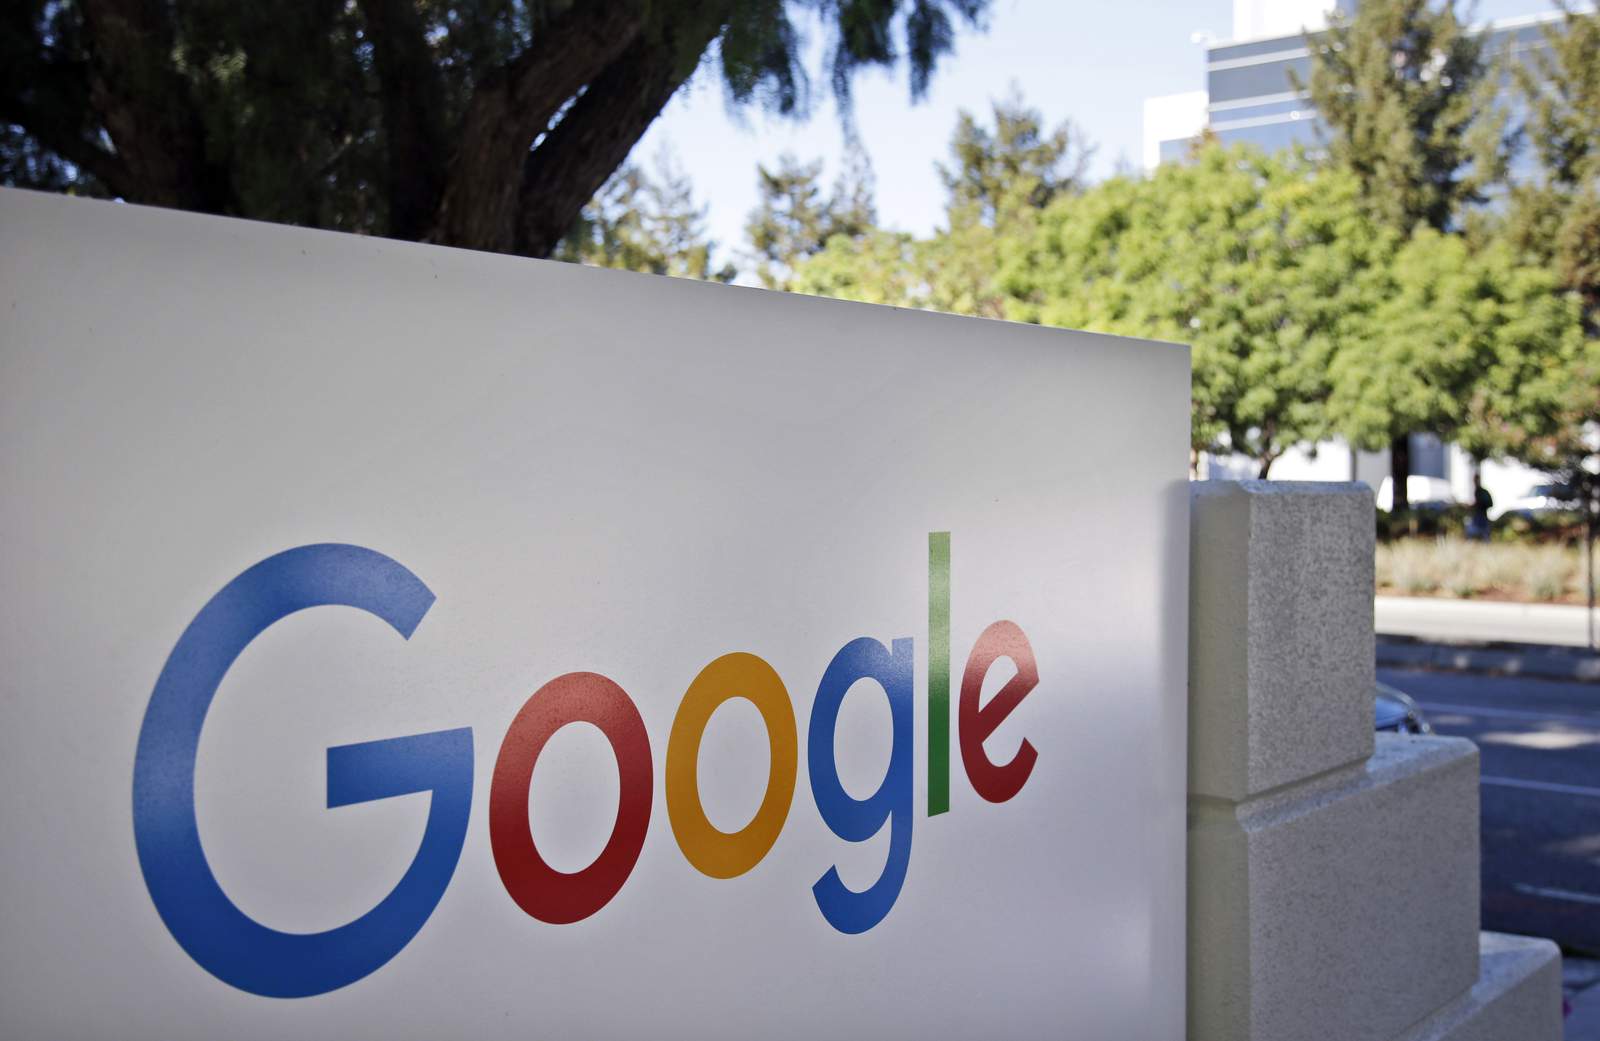 Dozens of states file anti-trust lawsuit against Google